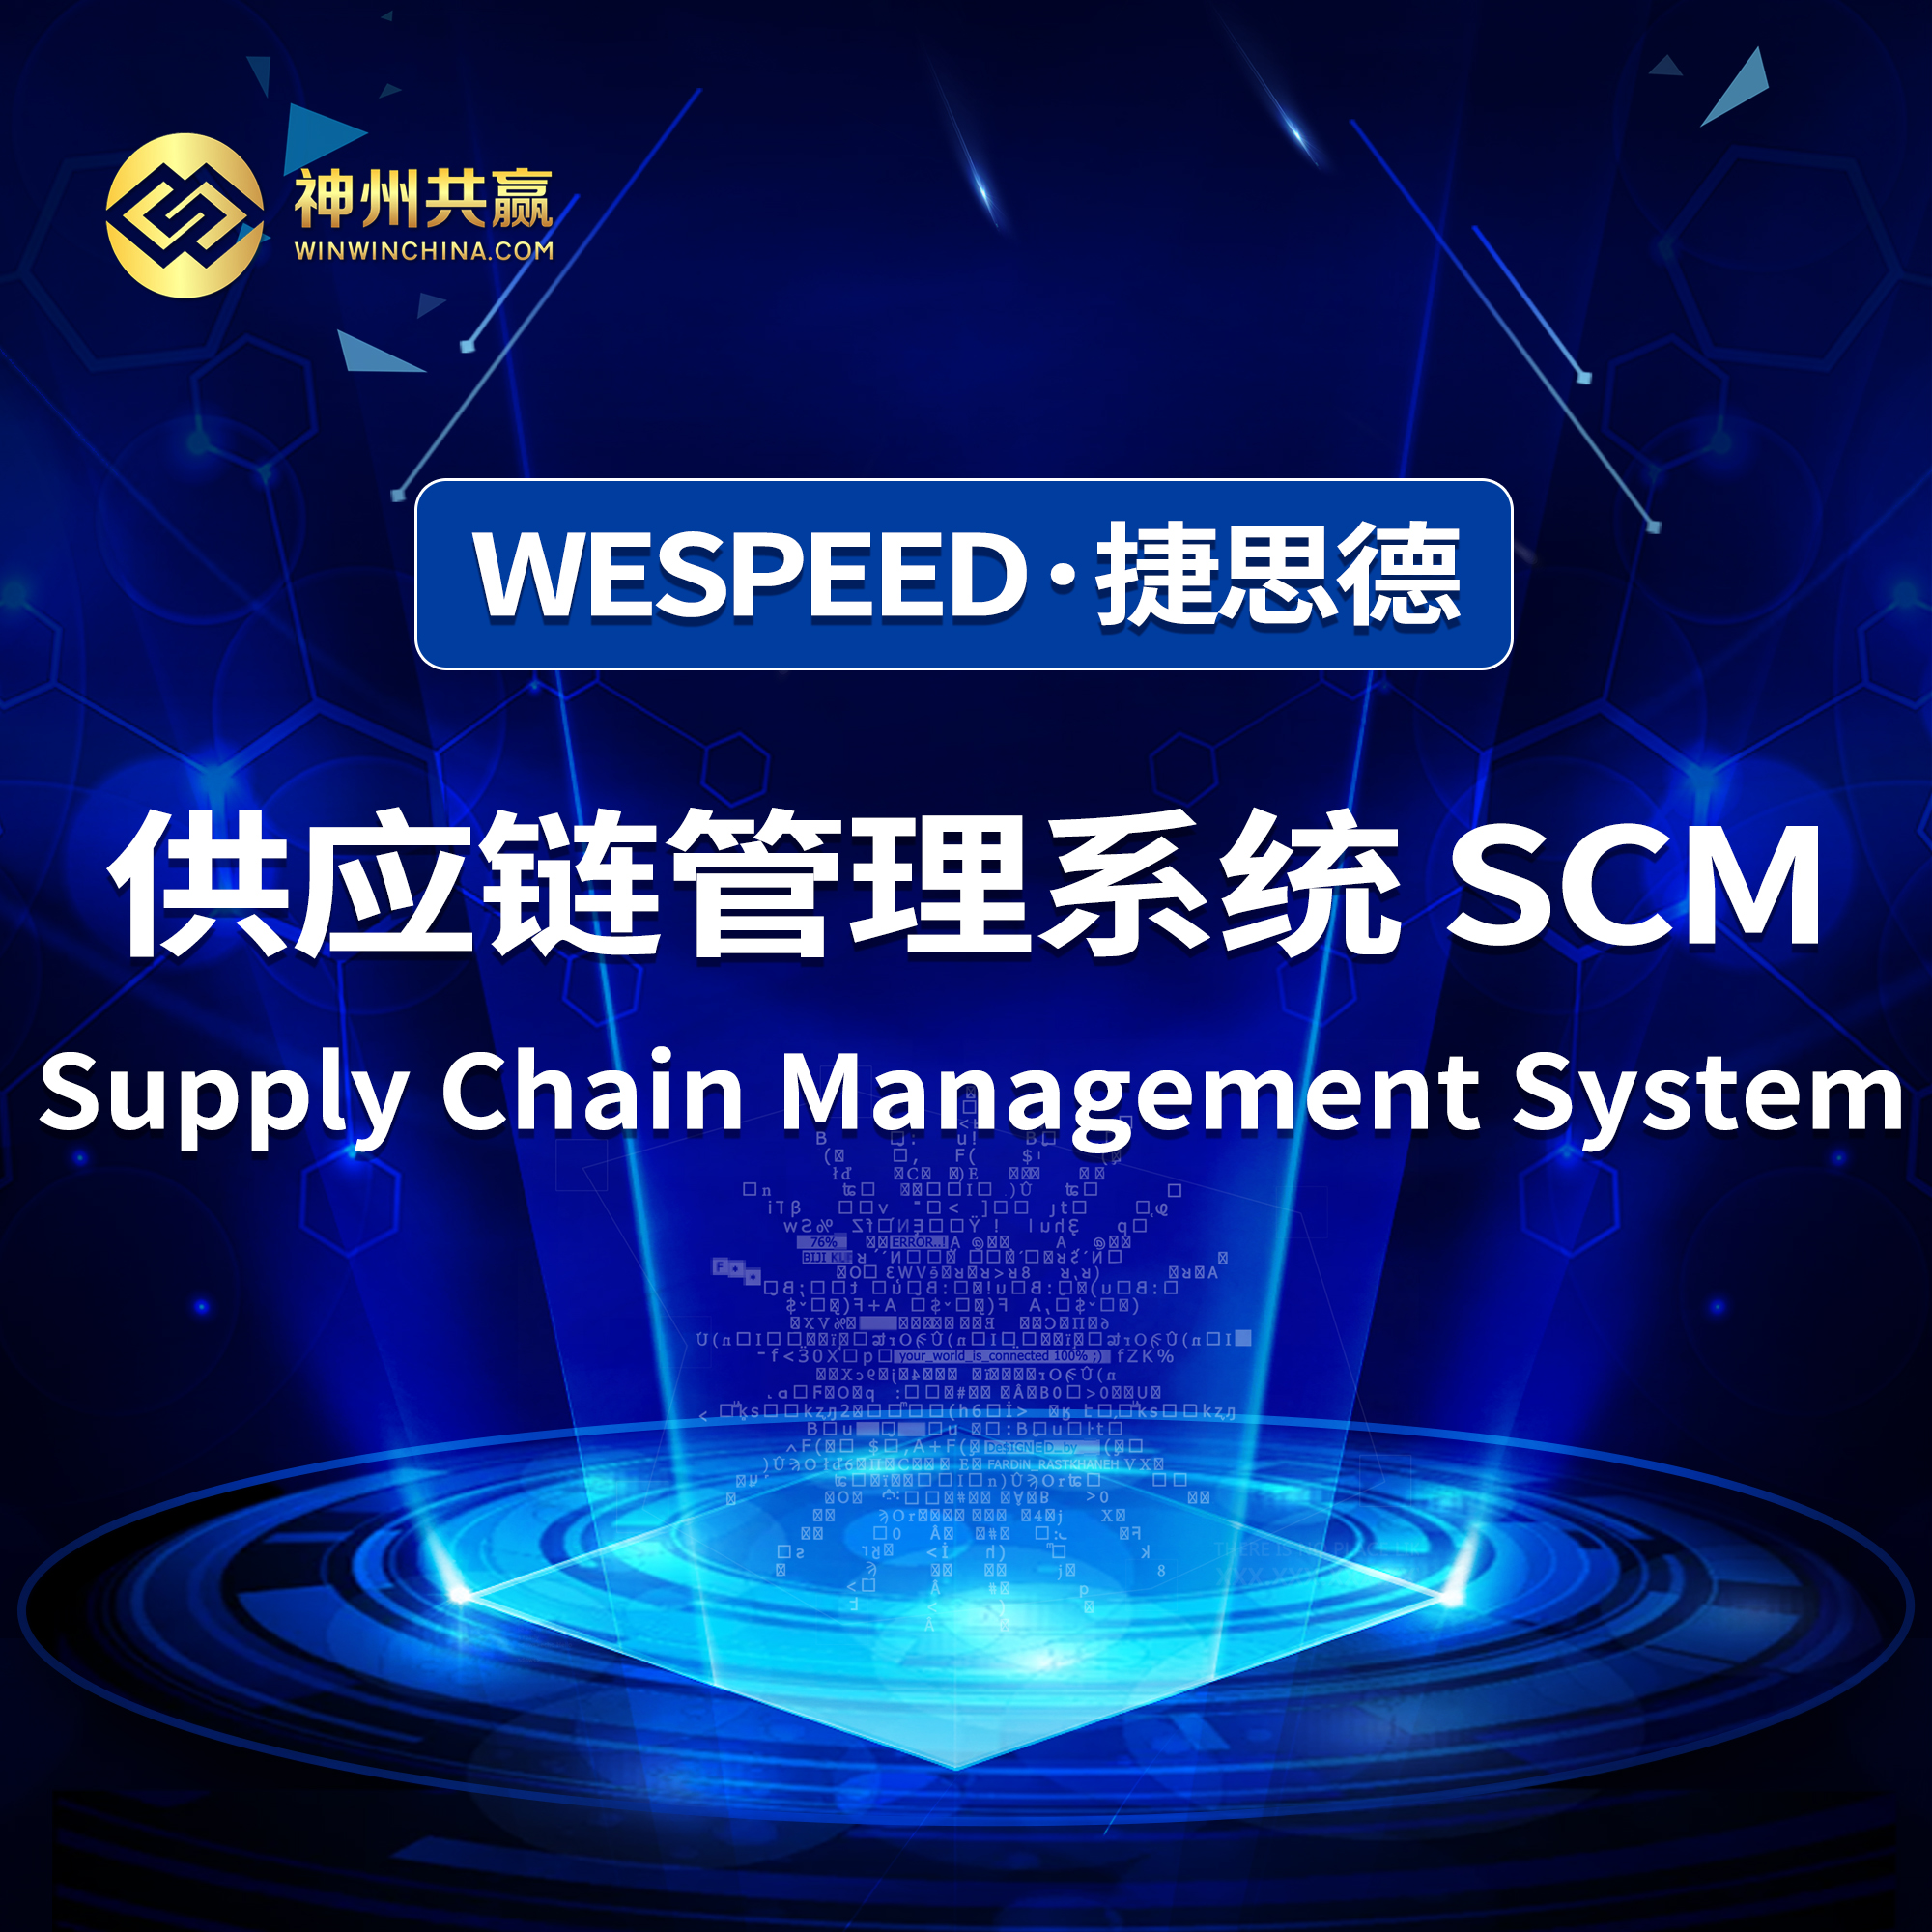 供应链管理系统 SCM 价格 全国